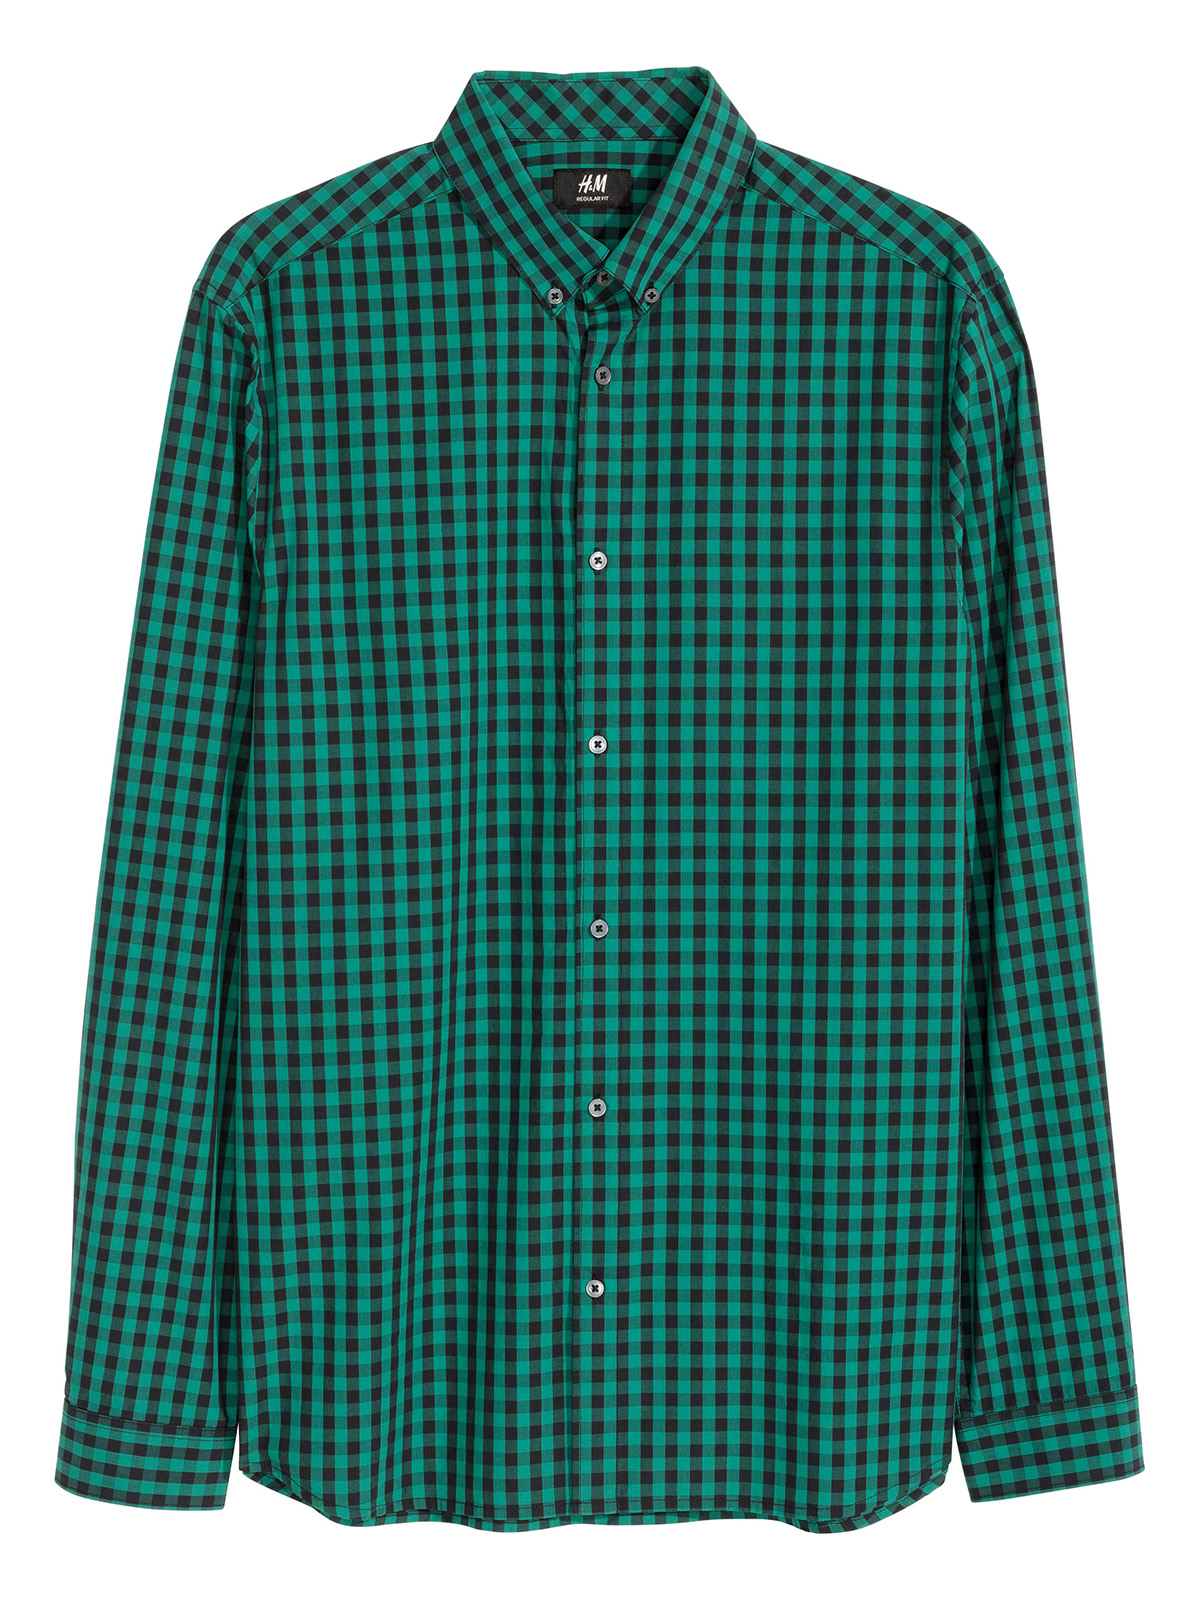 Зеленая клетчатая рубашка Декатлон